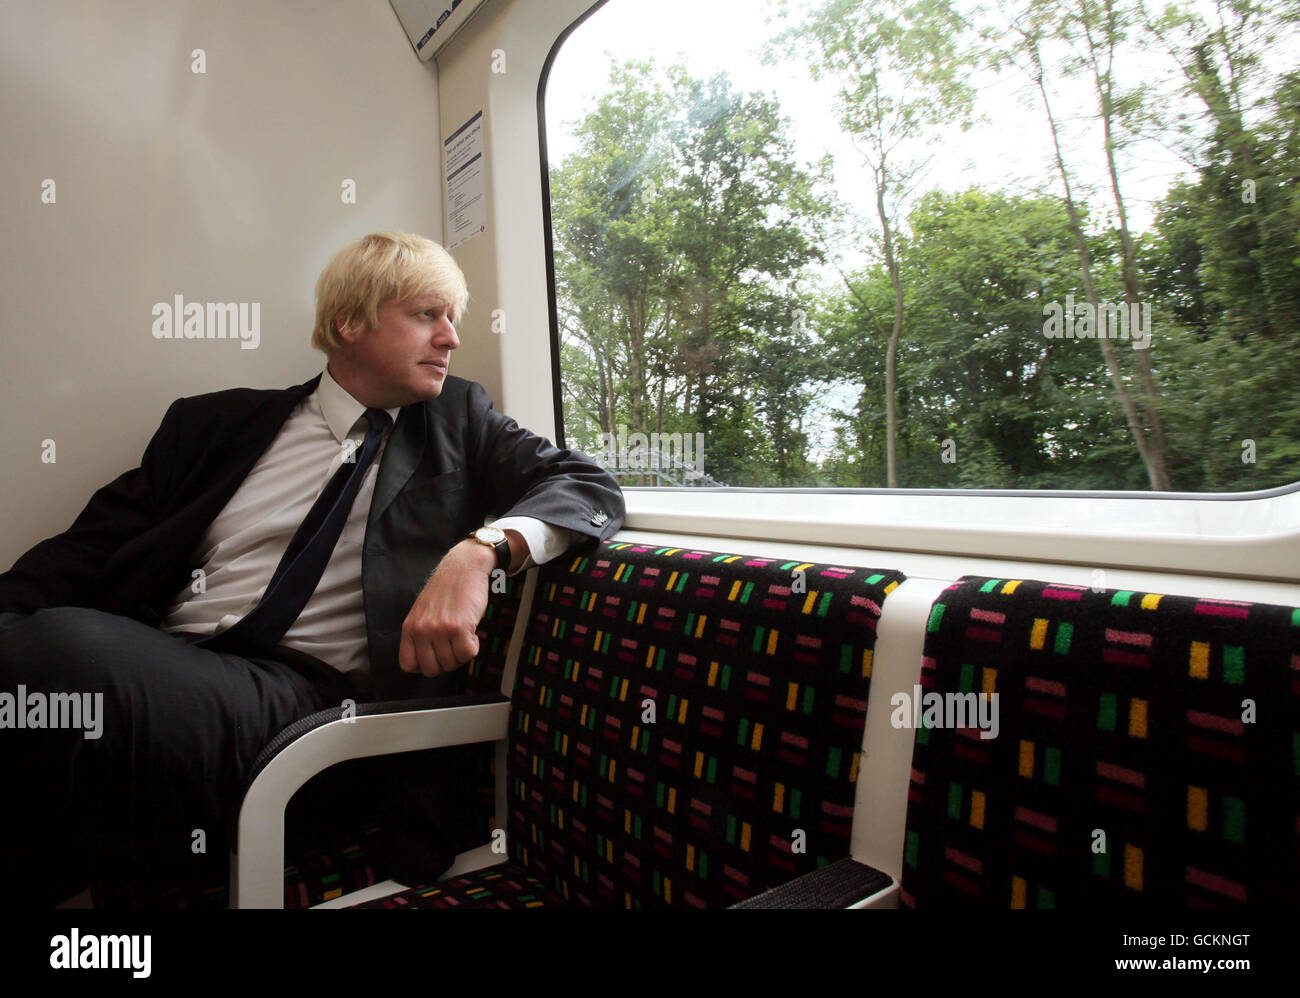 Il sindaco di Londra Boris Johnson all'interno del primo nuovo treno climatizzato a Londra come parte di un progetto di avere 40% dei treni della metropolitana aria condizionata entro il 2015. Foto Stock